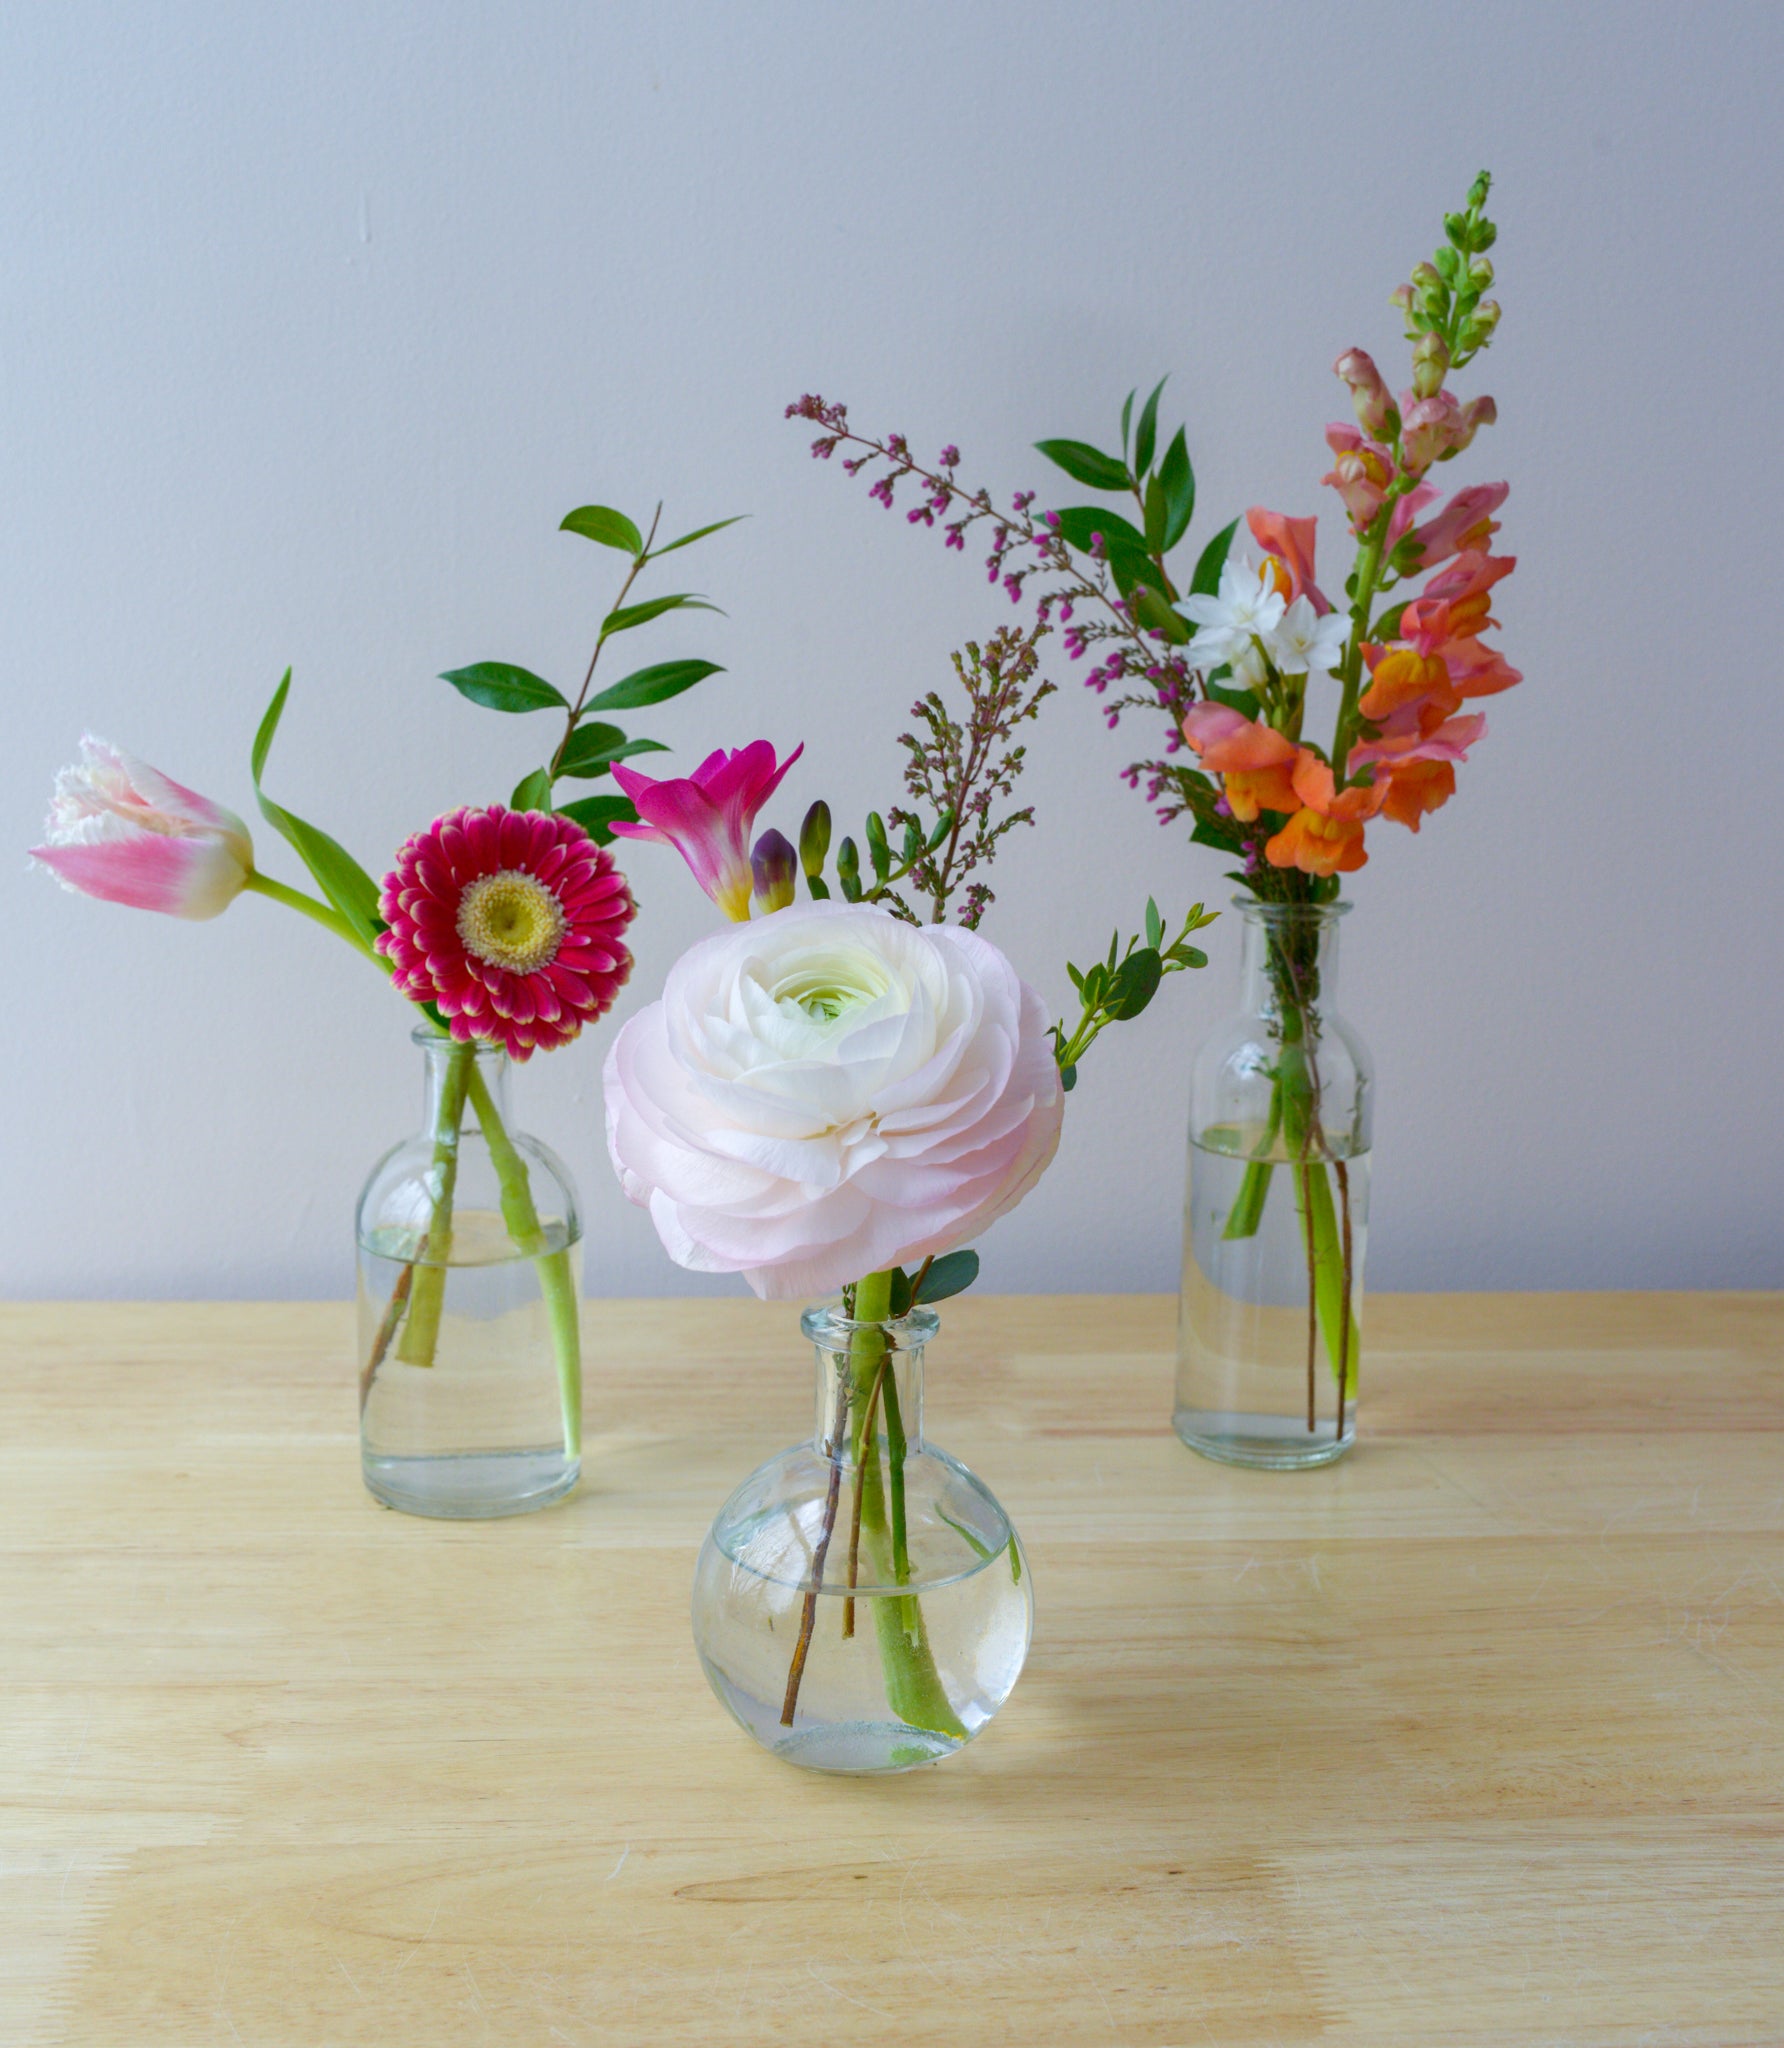 Summer Floral Bud Vases